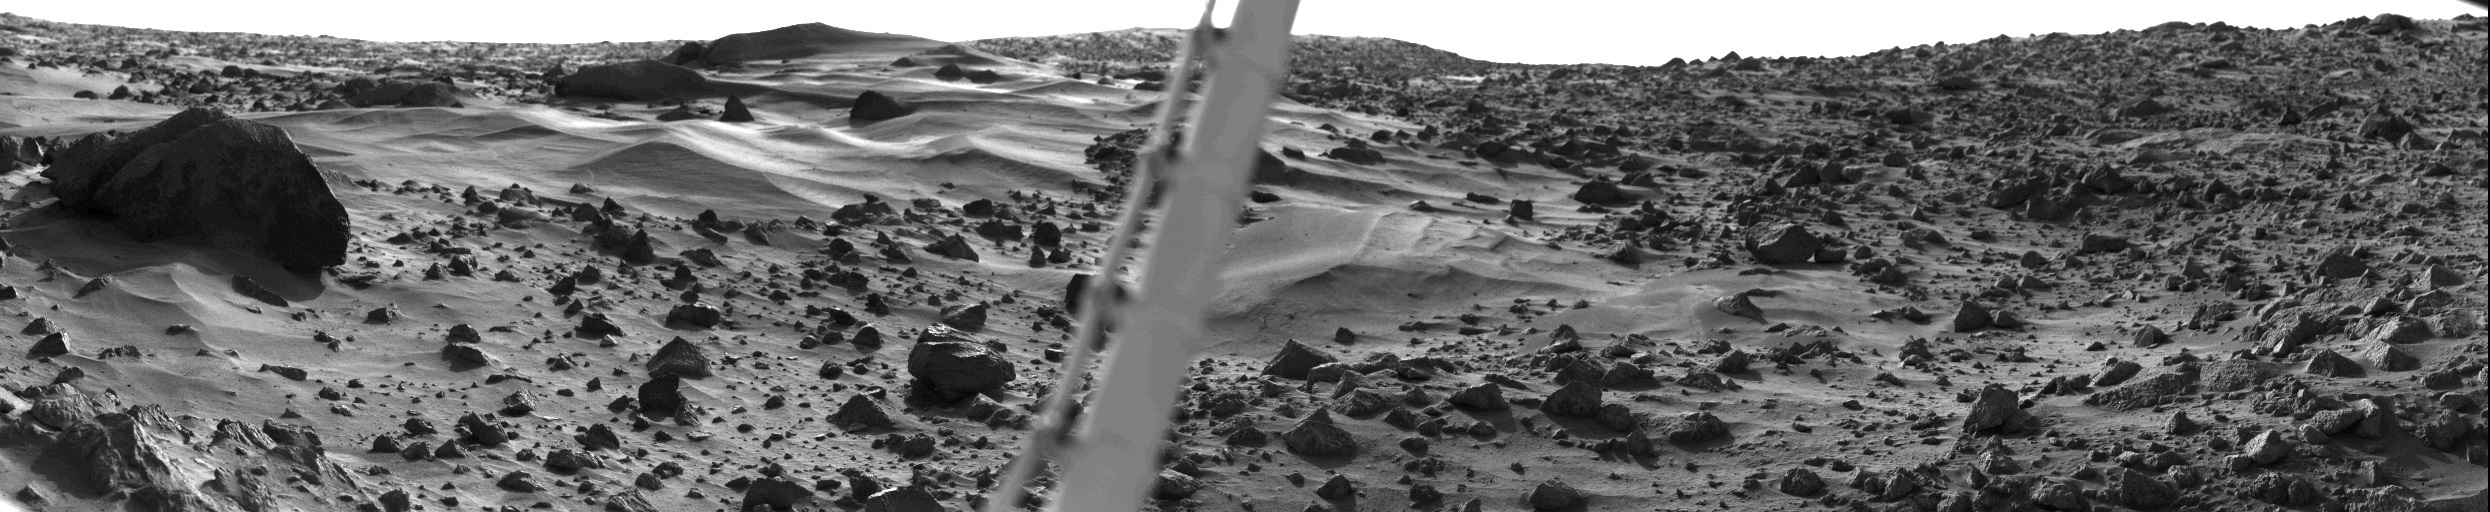 Viking 1 Showing Martian Dune Field